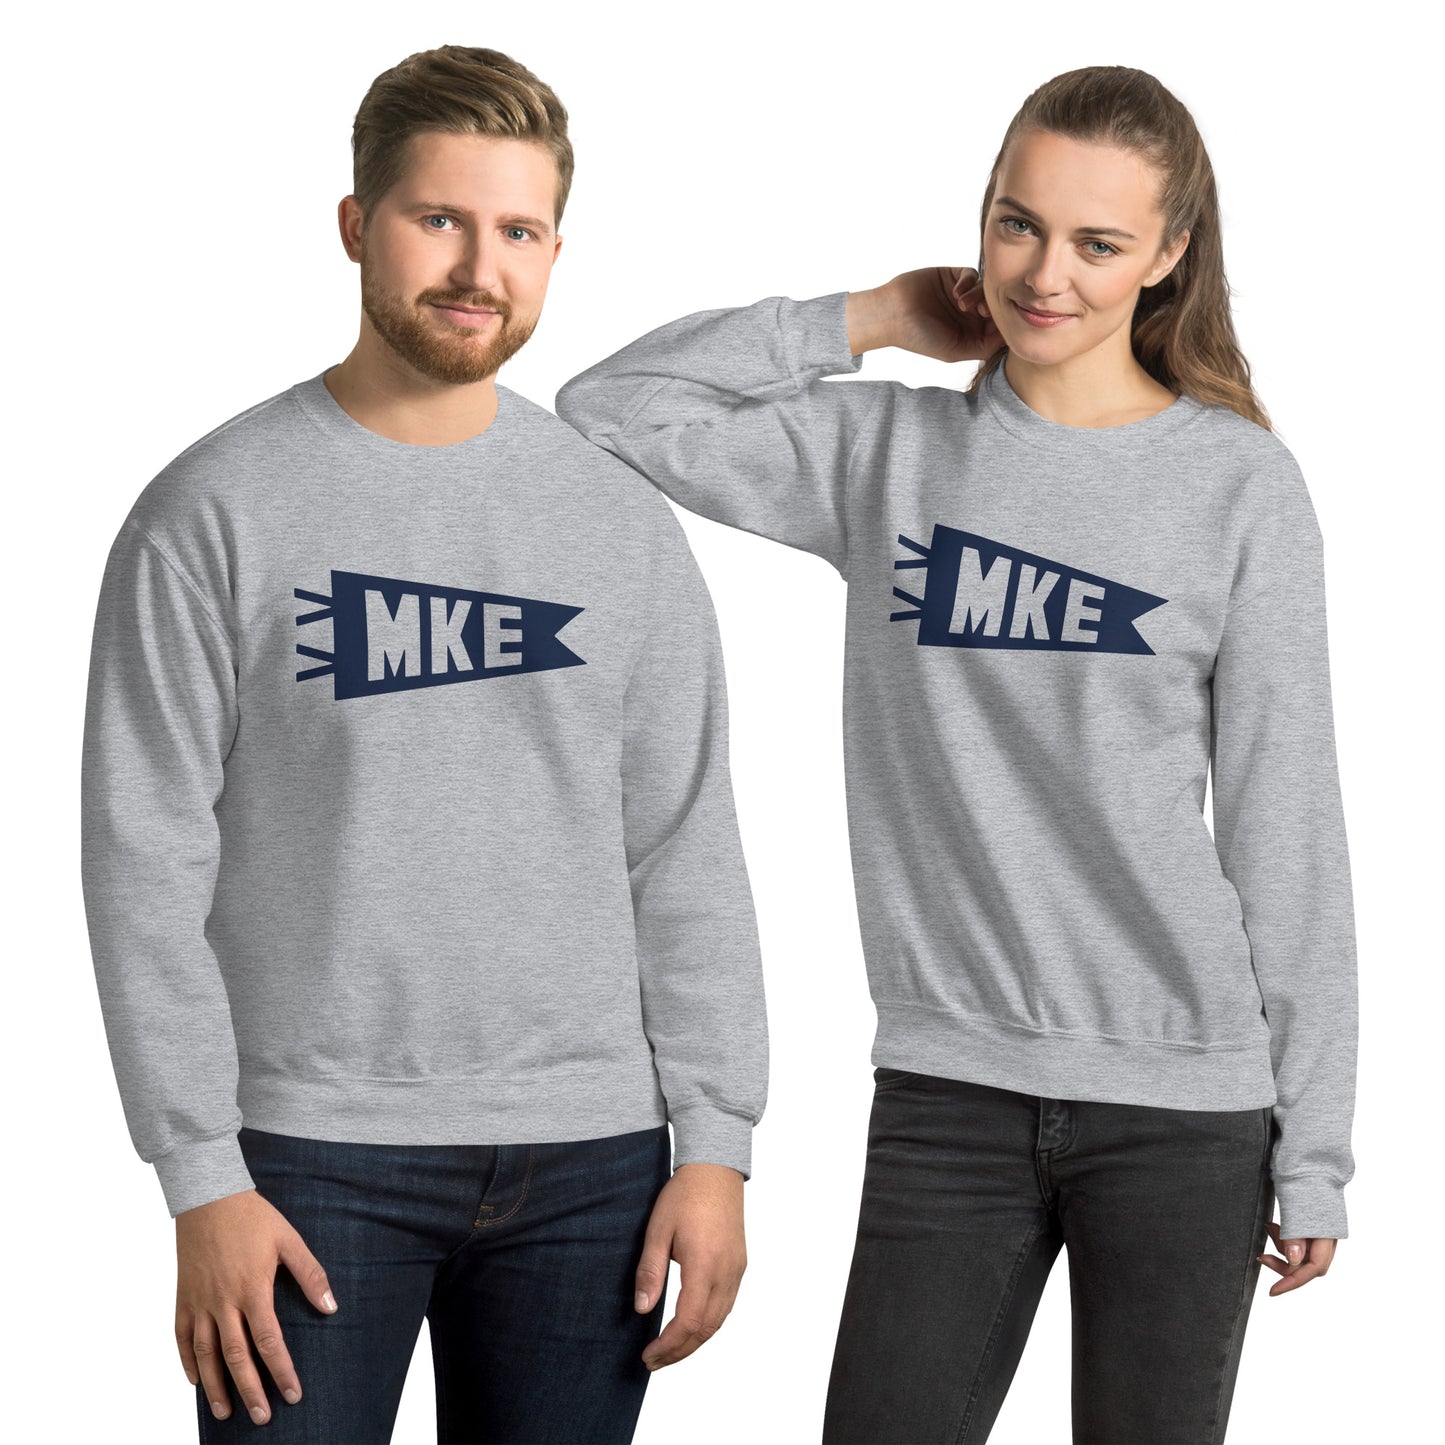 Airport Code Sweatshirt - Navy Blue Graphic • MKE Milwaukee • YHM Designs - Image 09